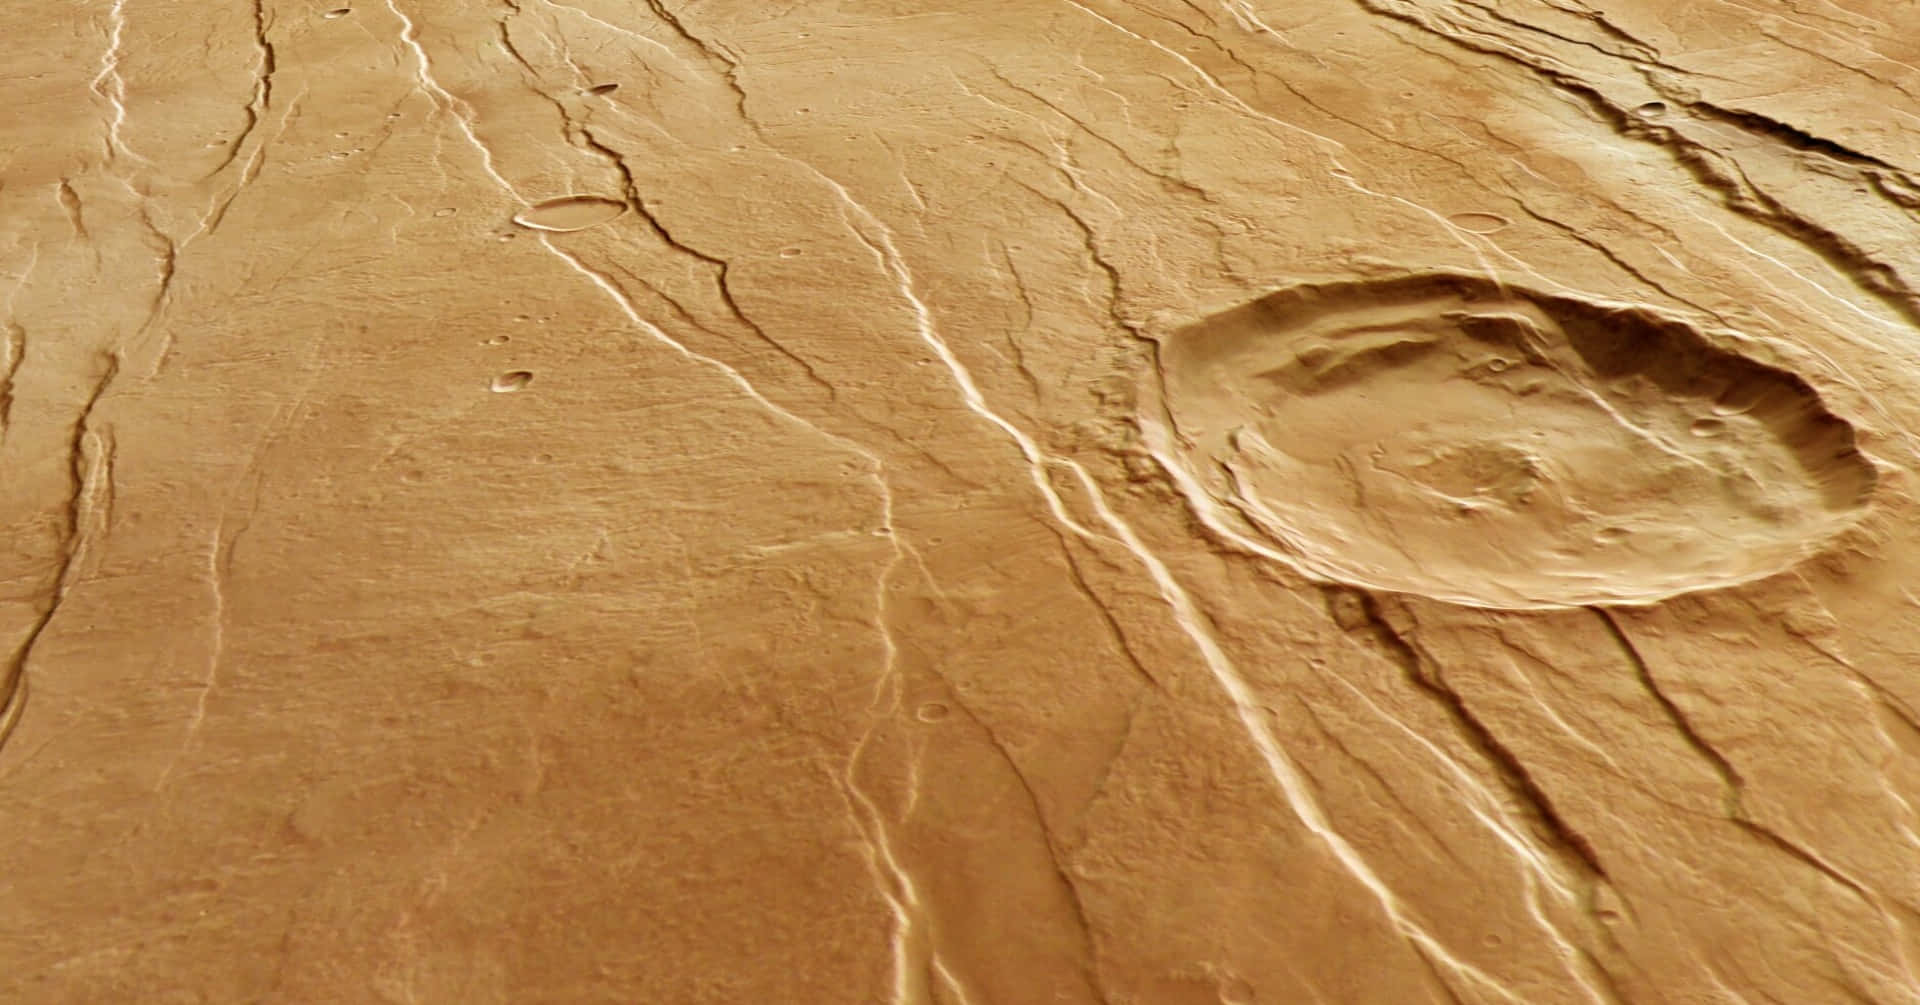 Bilder Der Marsoberfläche